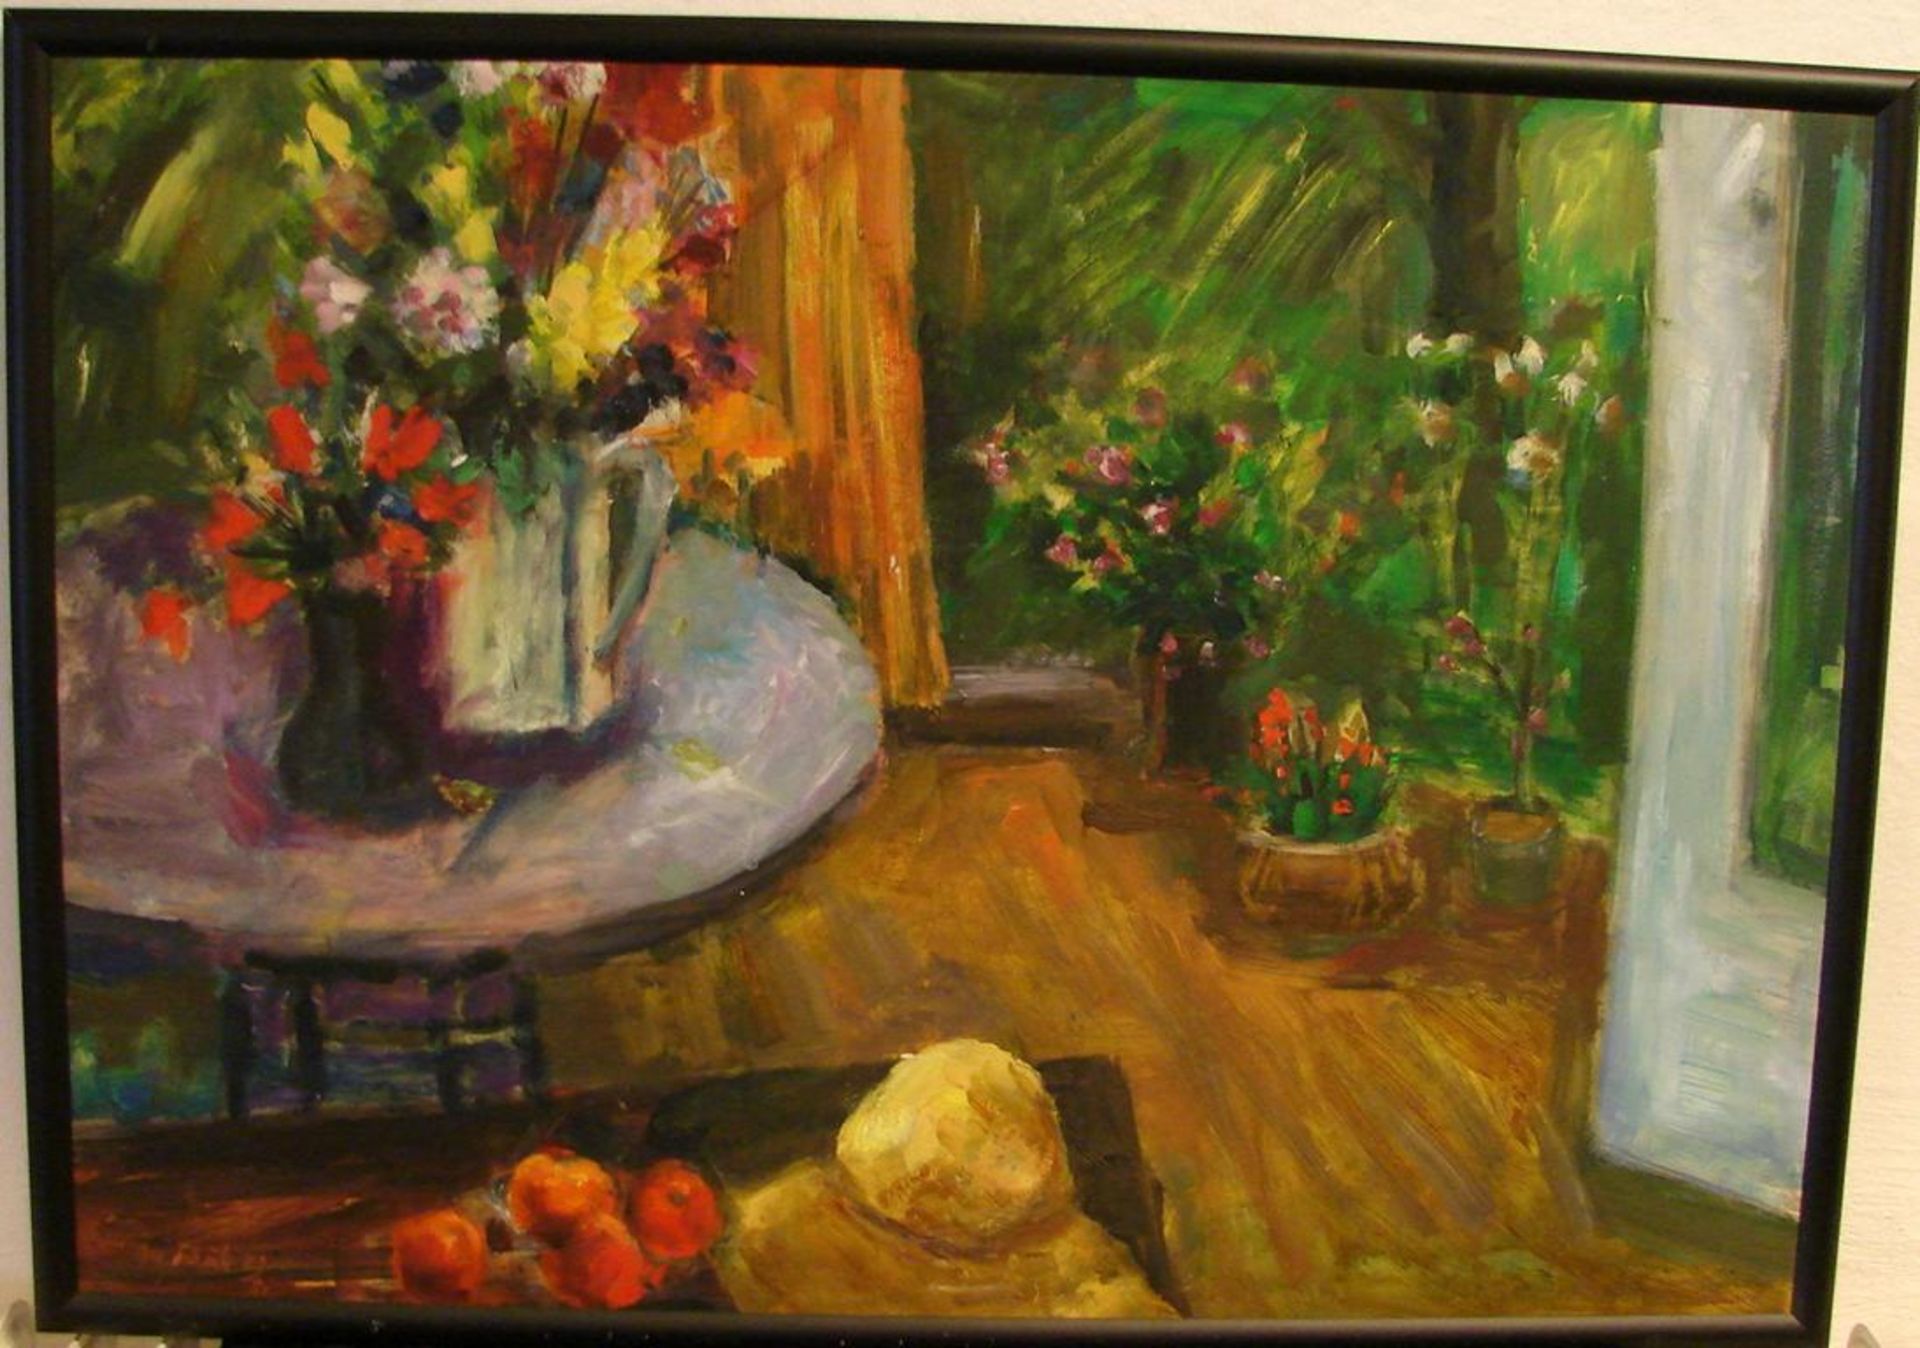 M. SCHULZ, "Tisch mit Blumenstrauß", ÖL/Hartfaser, u.li.sig., dat.89/90, ca. 100 x 70 cm